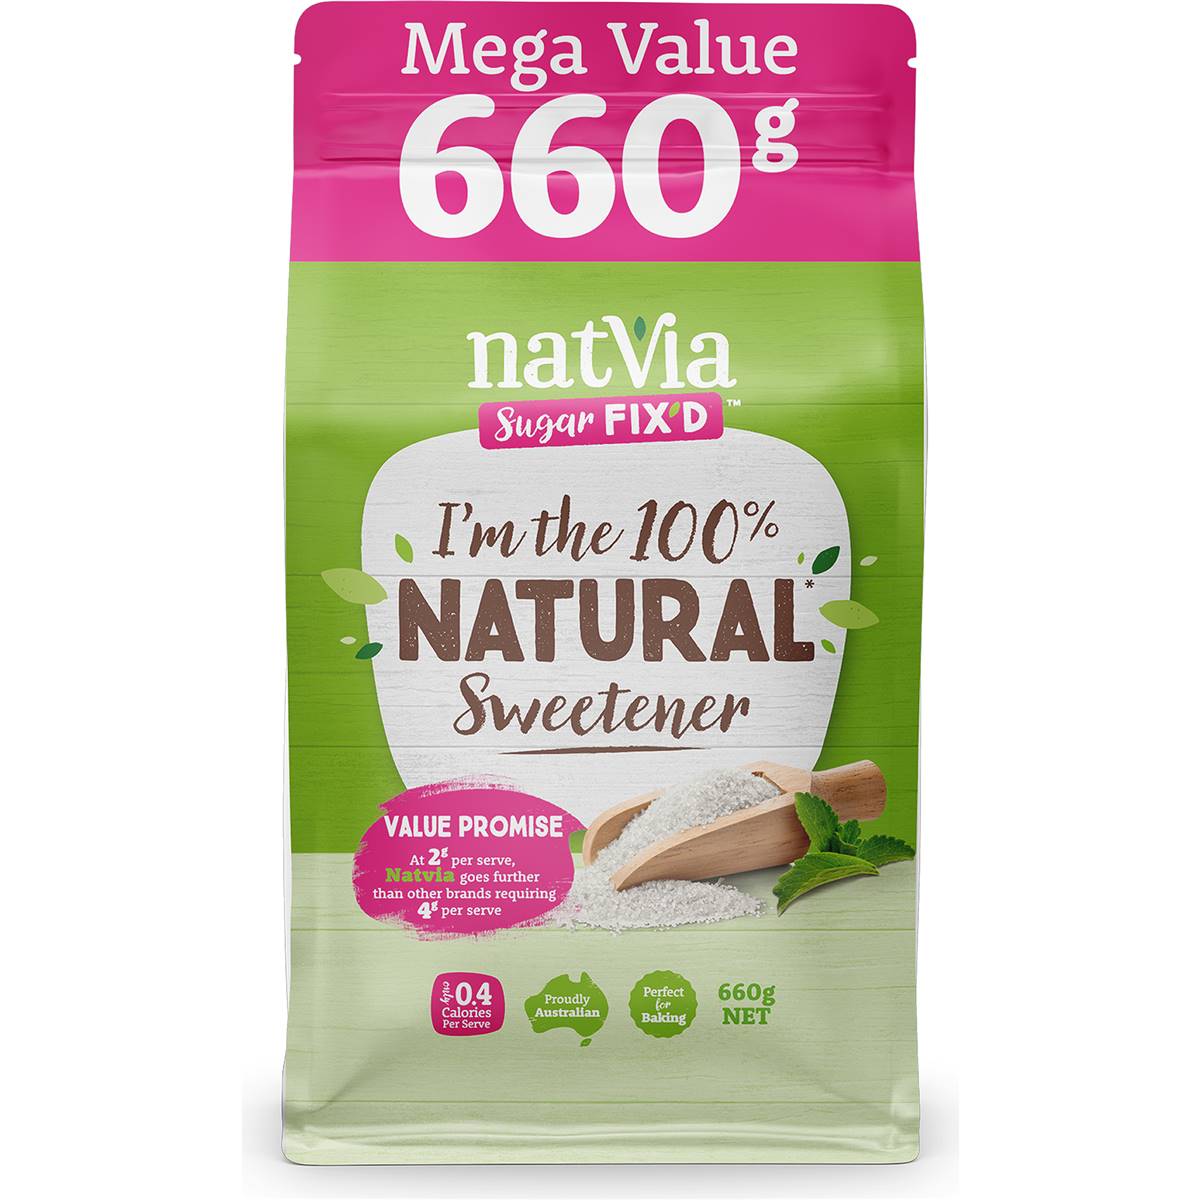 Calories in Natvia Sugar Fix'd Natural Sweetener